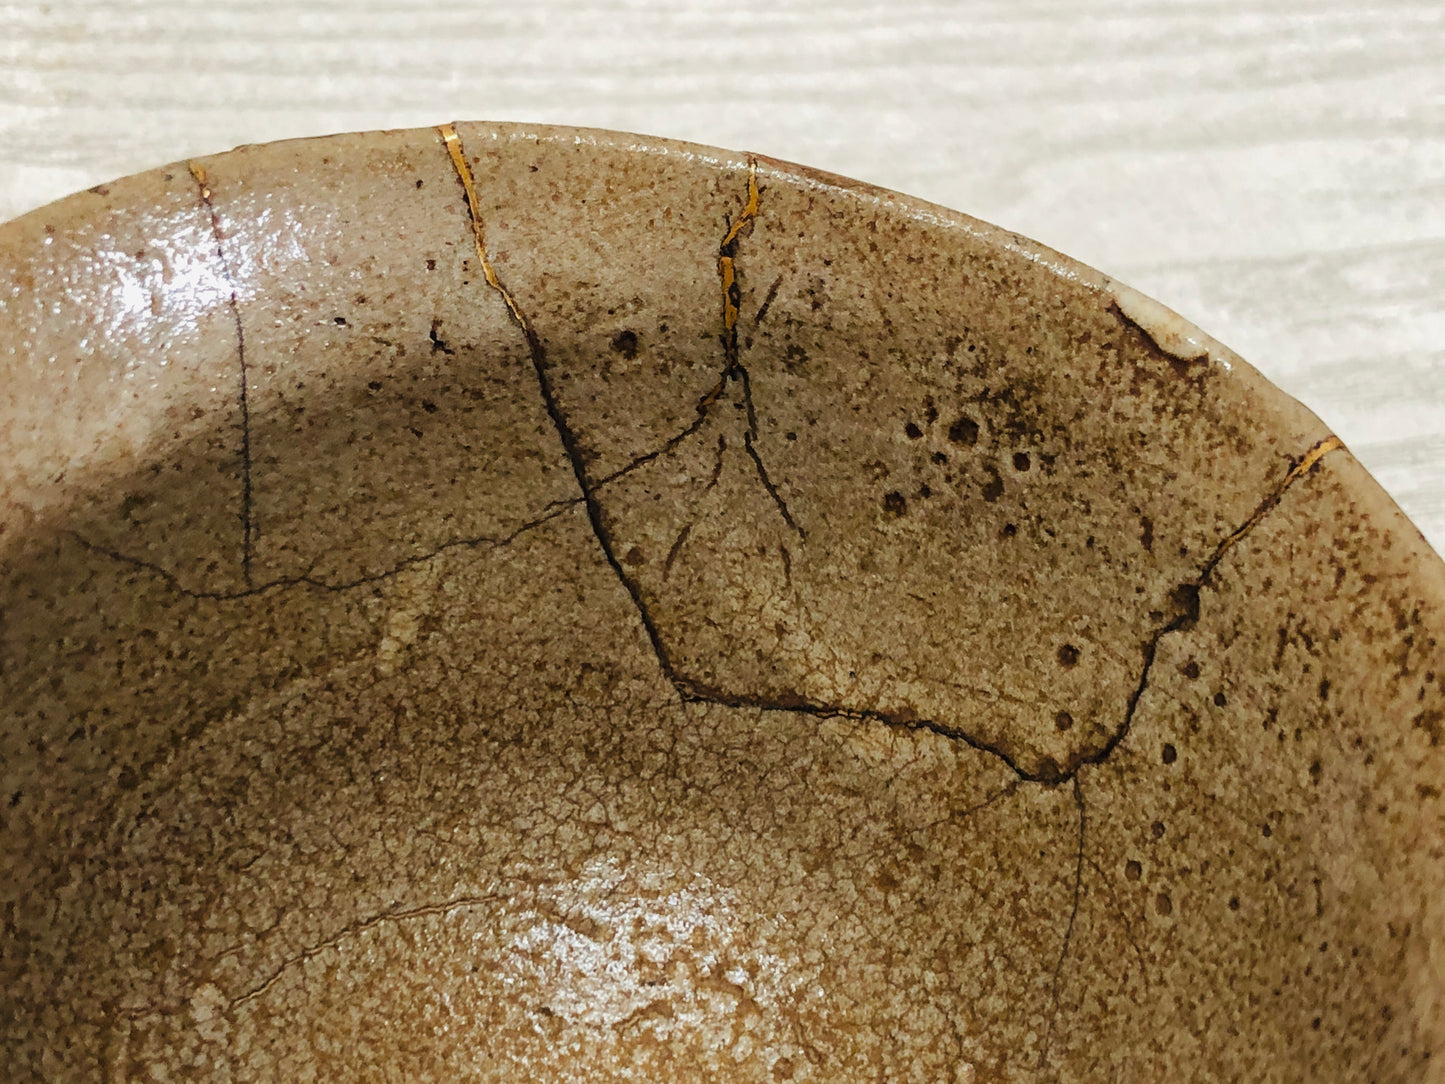 Y3479 CHAWAN Karatsu-ware kintsugi box Japan tea ceremony bowl antique vintage